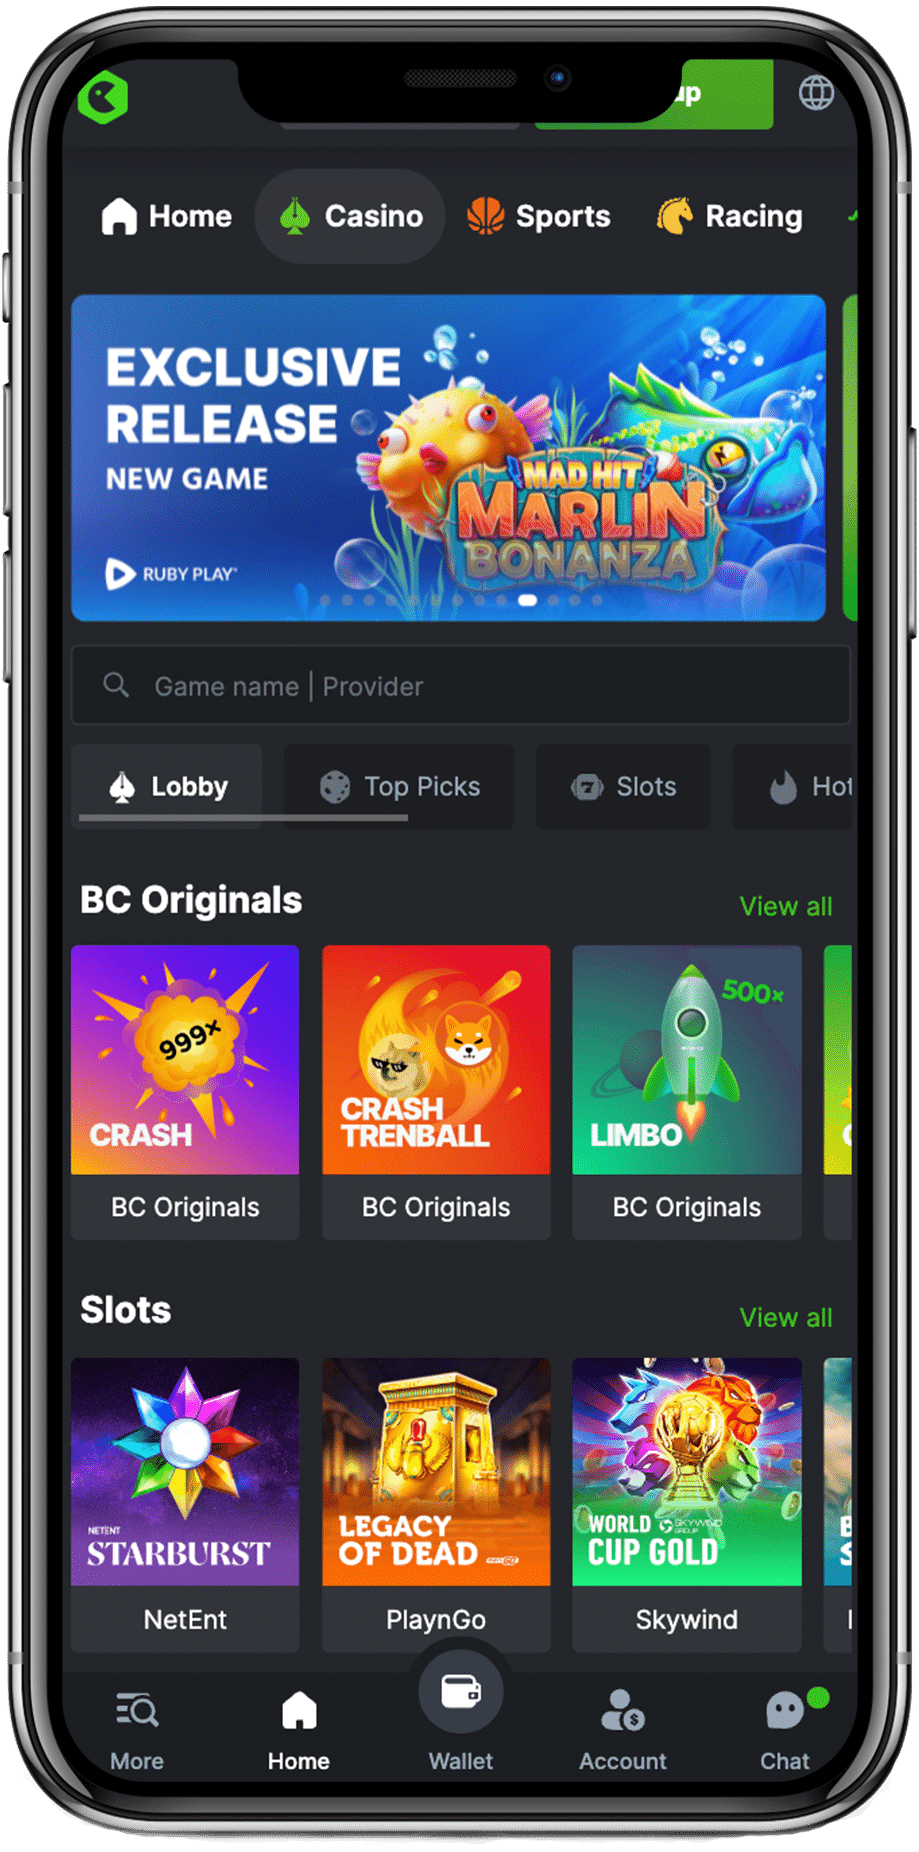 bc game casino bonus